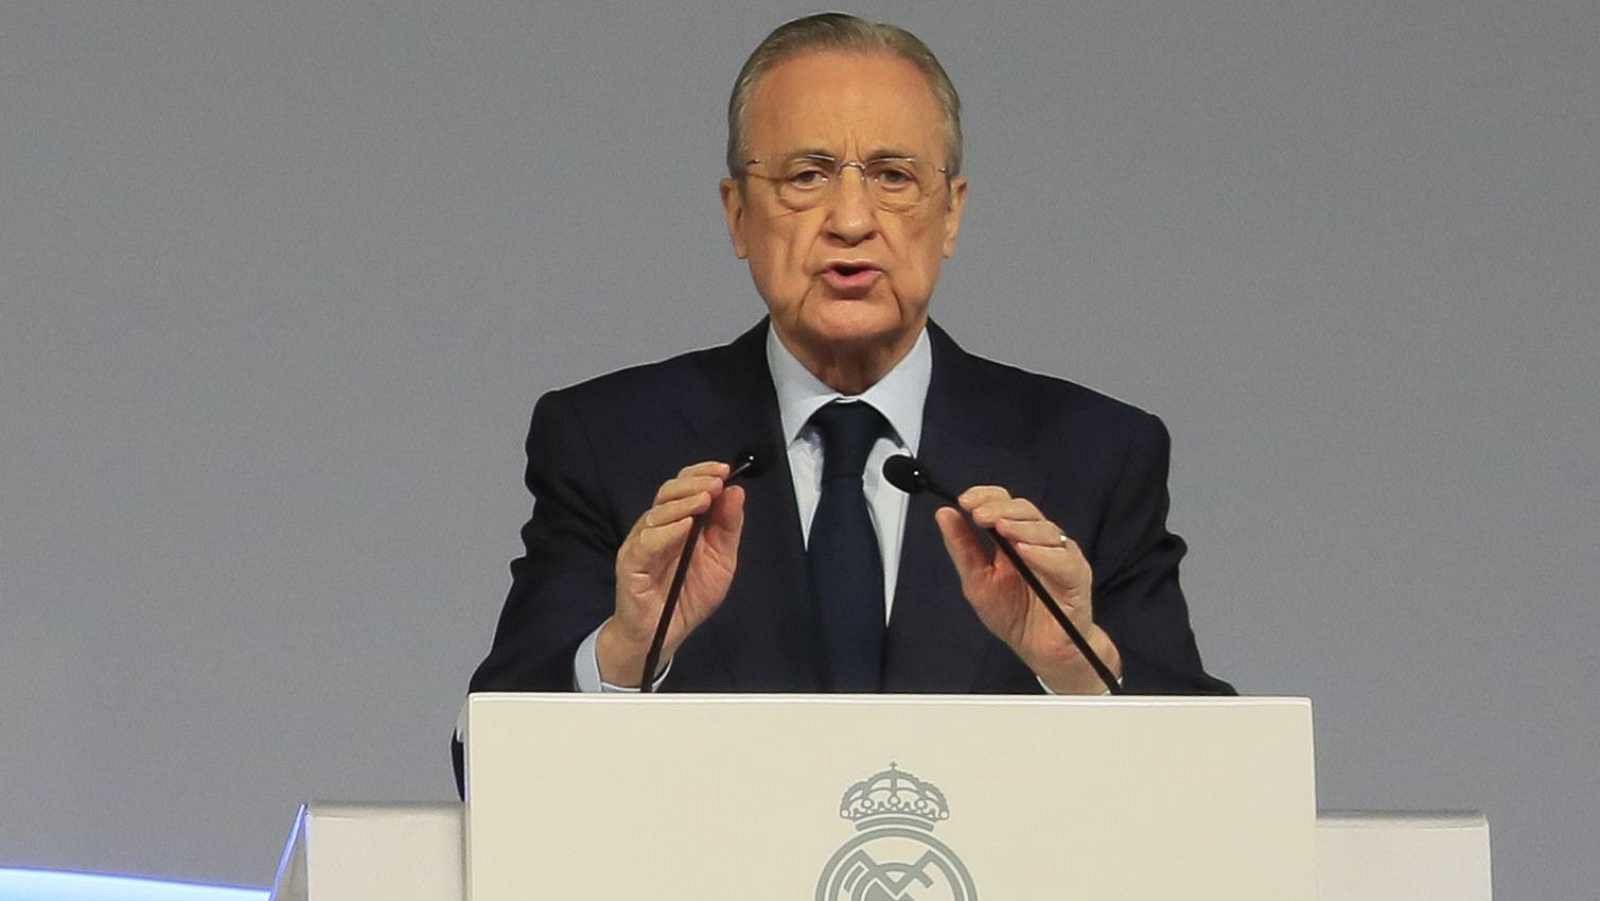 El Real Madrid se personará tras la denuncia de la Fiscalía contra el Barcelona y dos expresidentes  